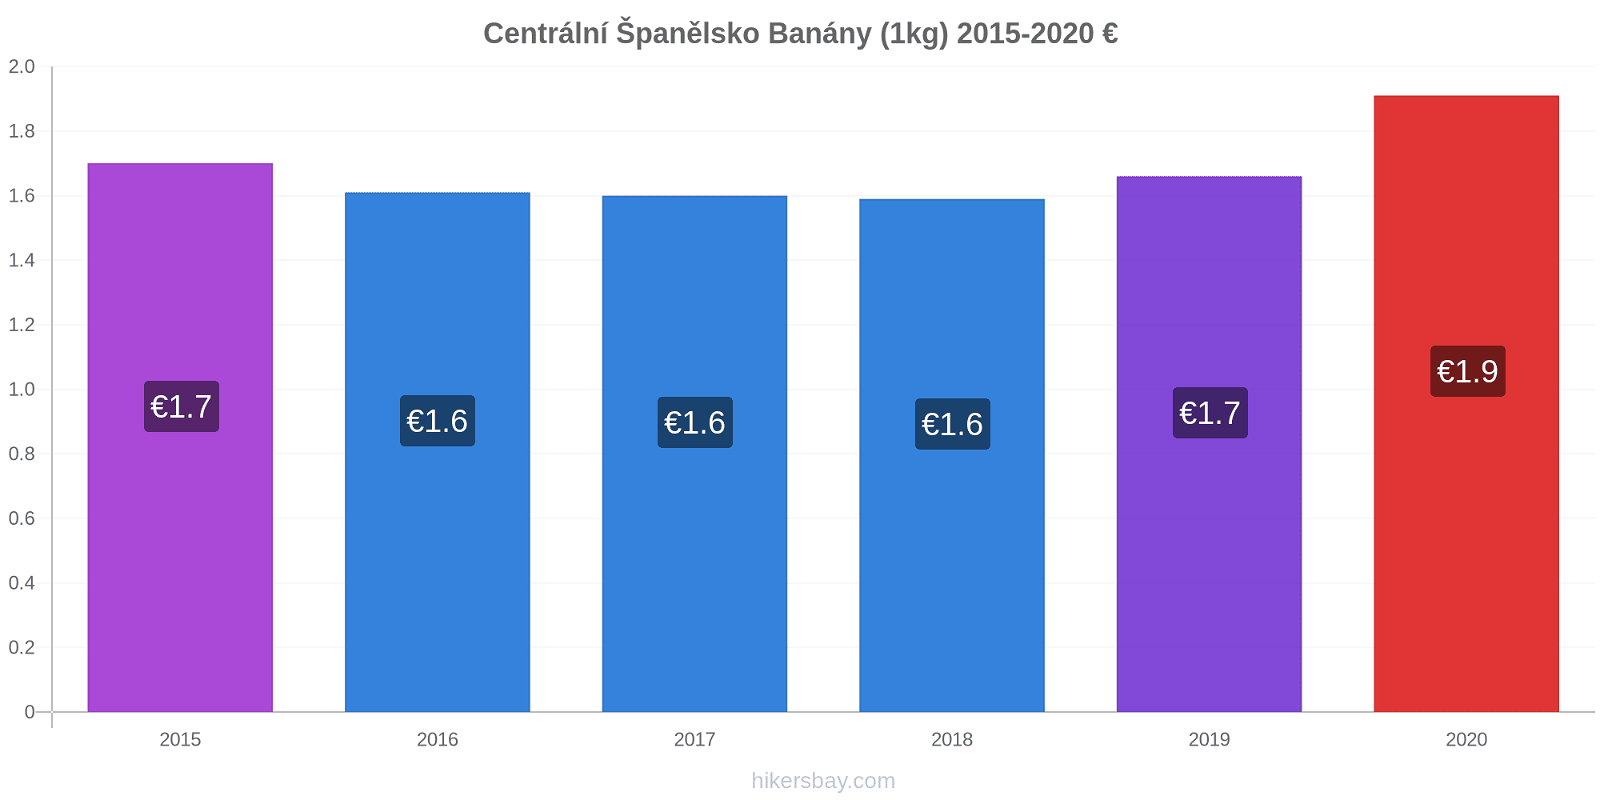 Centrální Španělsko změny cen Banány (1kg) hikersbay.com